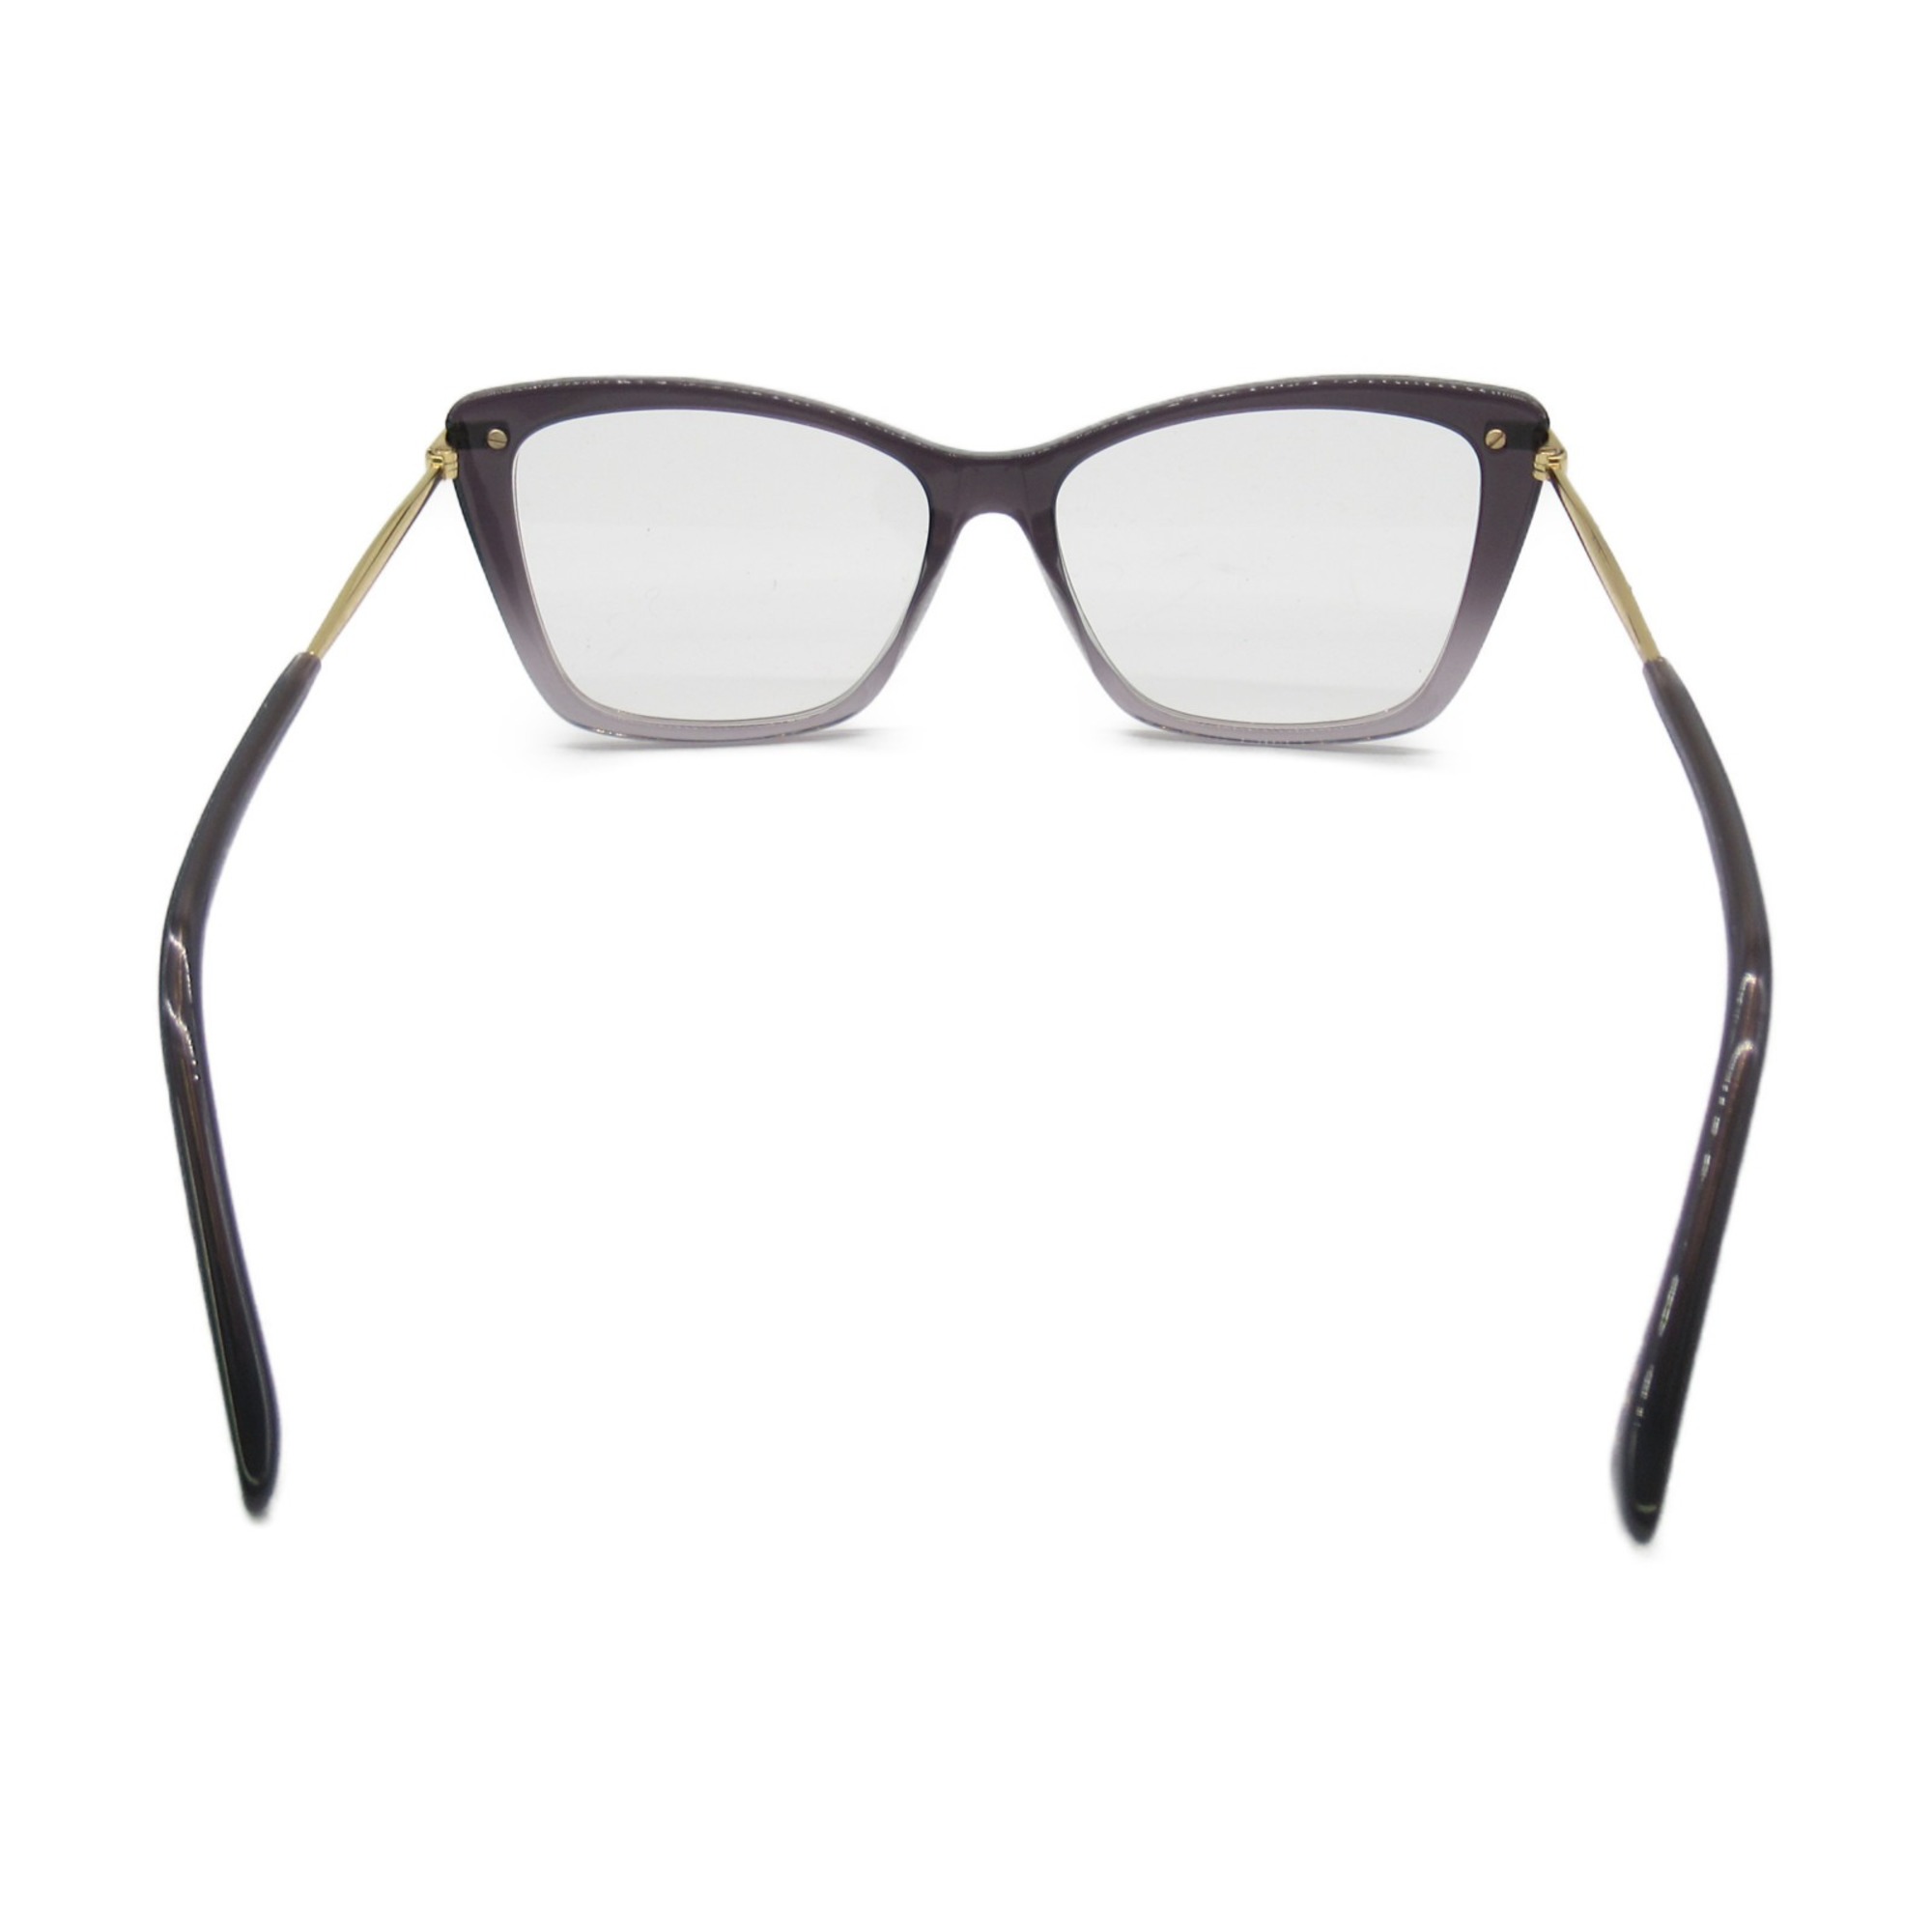 JIMMY CHOO Date Glasses Glasses Frame Black Stainless Steel Plastic 297 KB7(54)